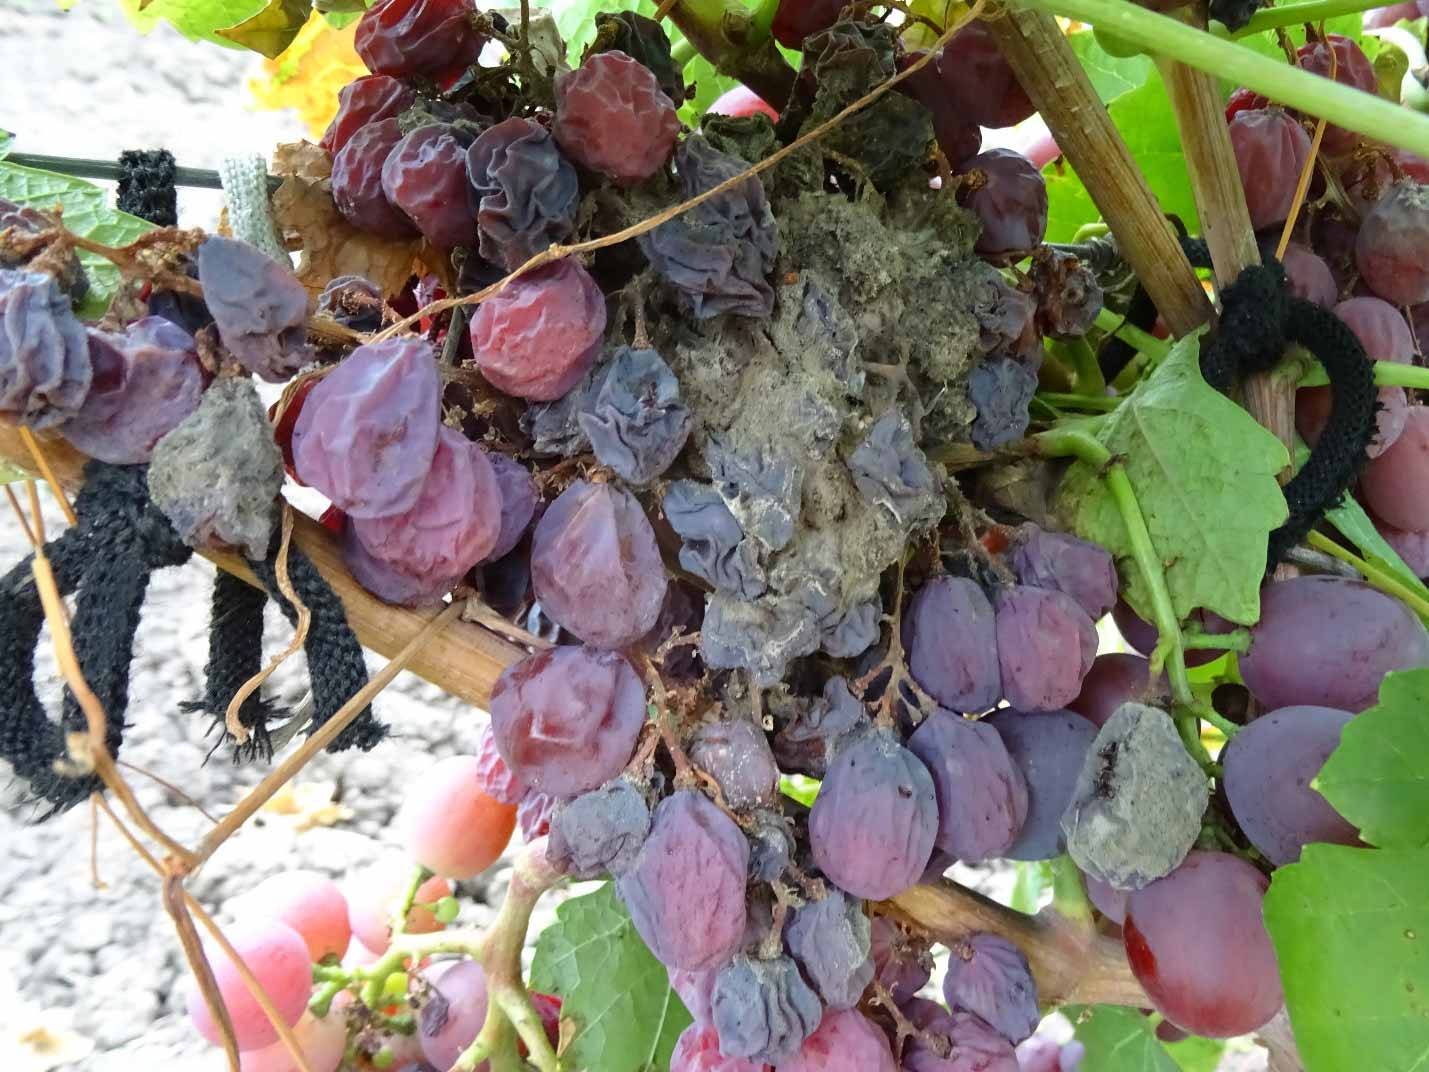 Атос: описание сорта винограда, выращивание, отзывы